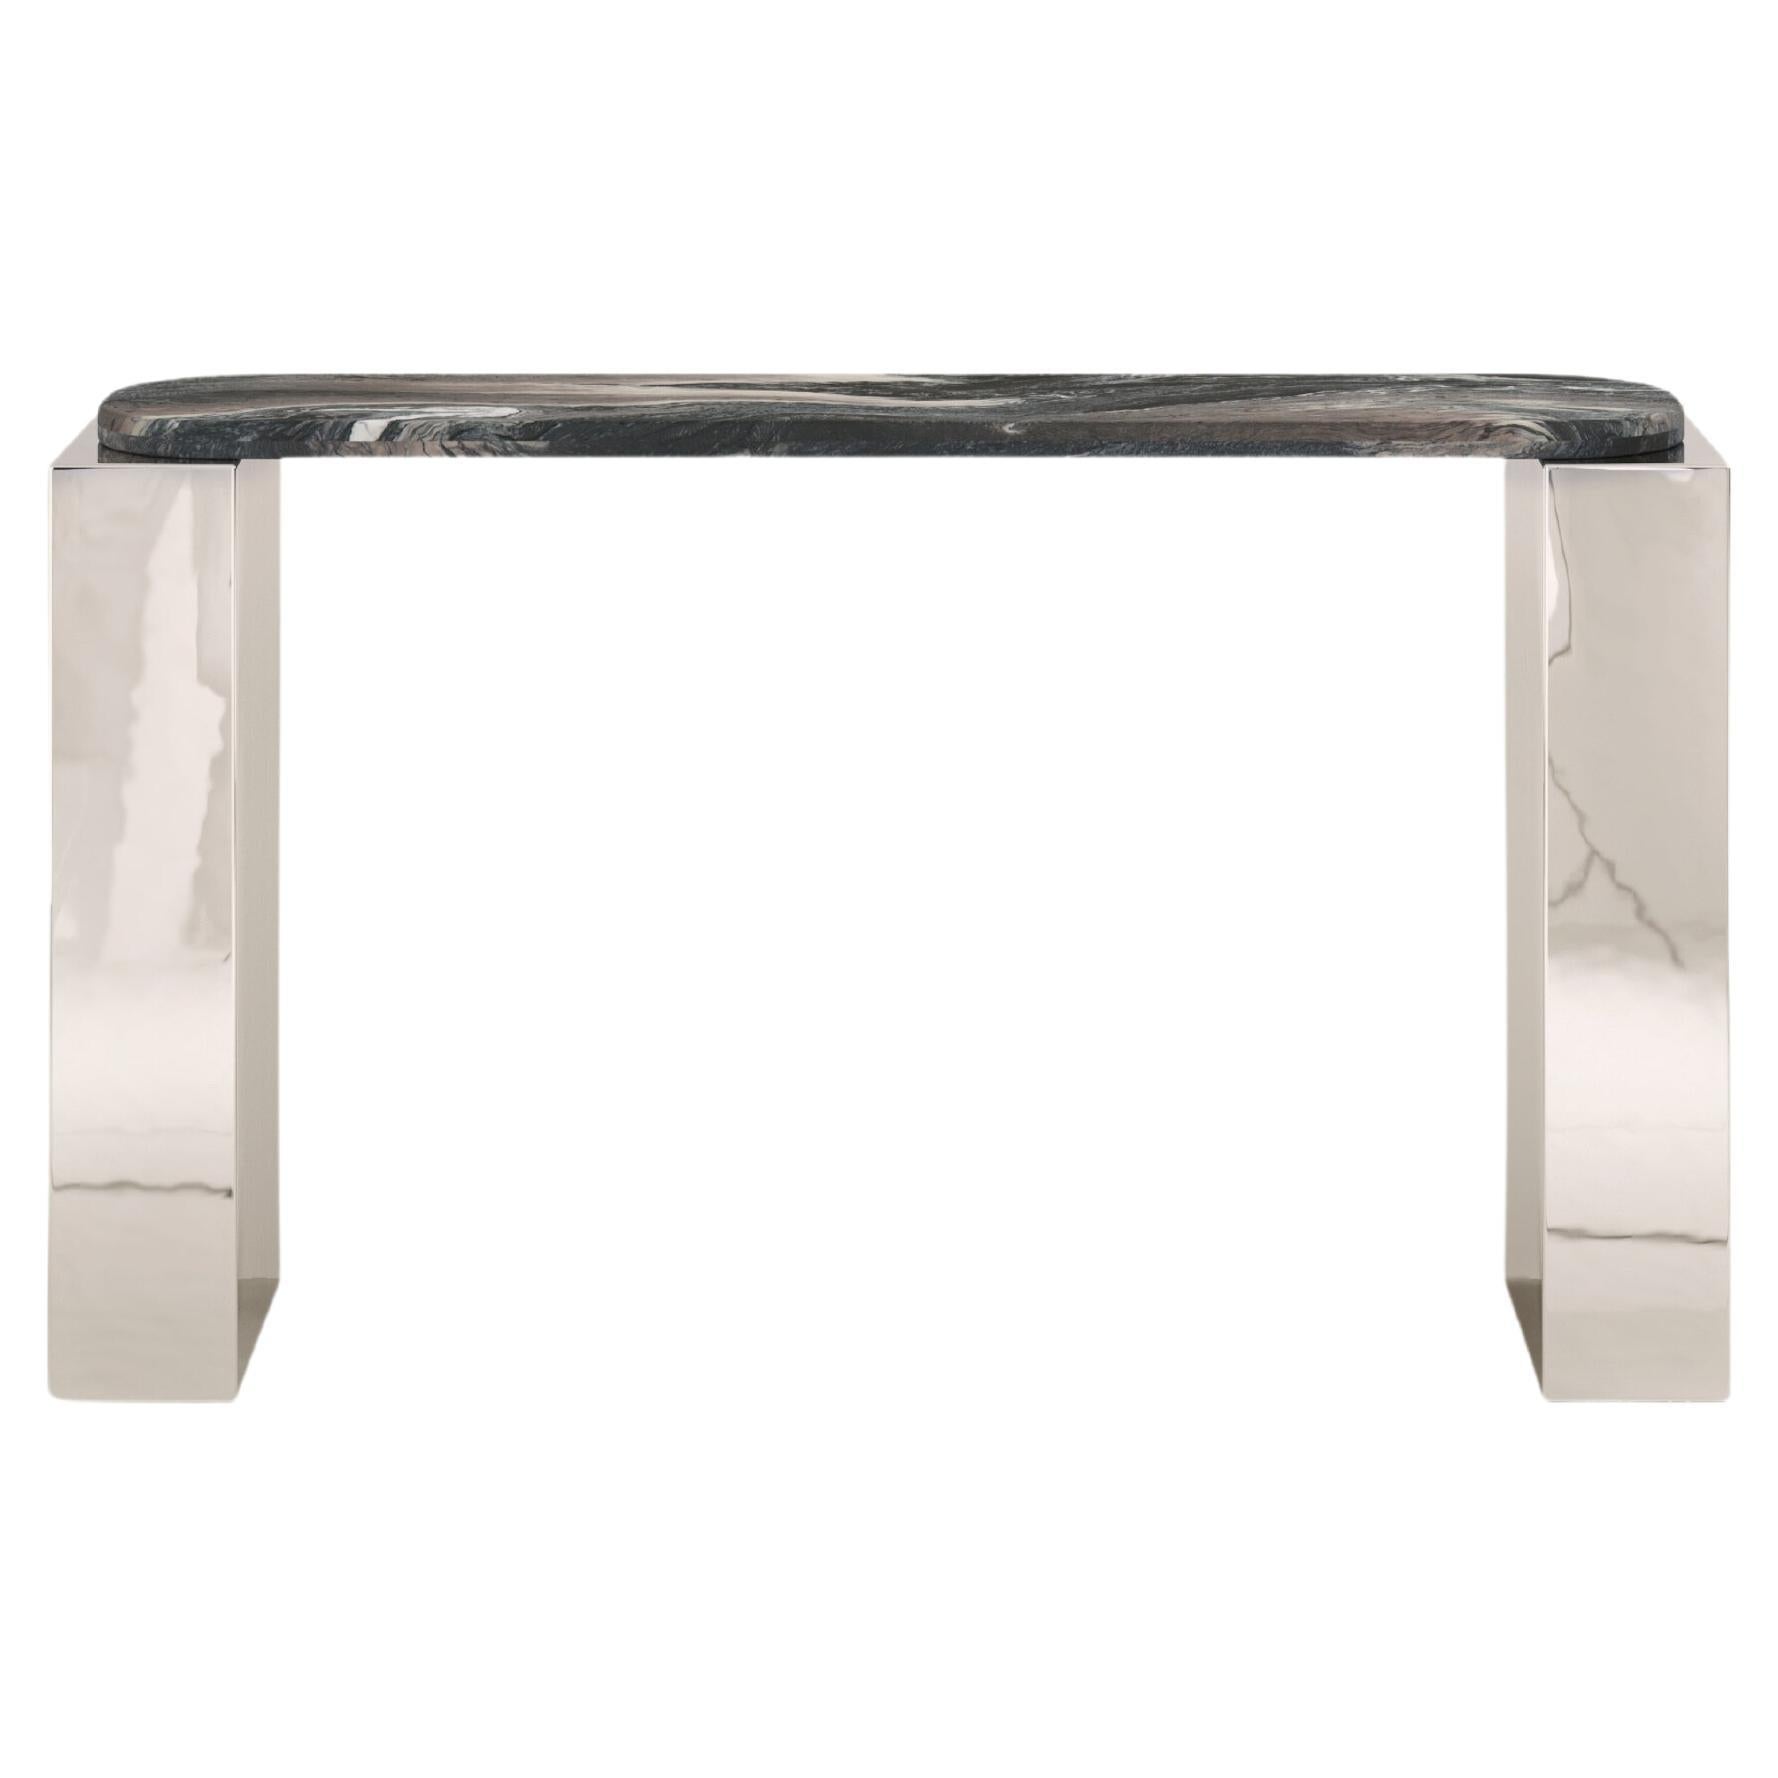 FORM(LA) Cubo Console Table 74”L x 17”W x 36”H Ondulato Marble & Chrome For Sale